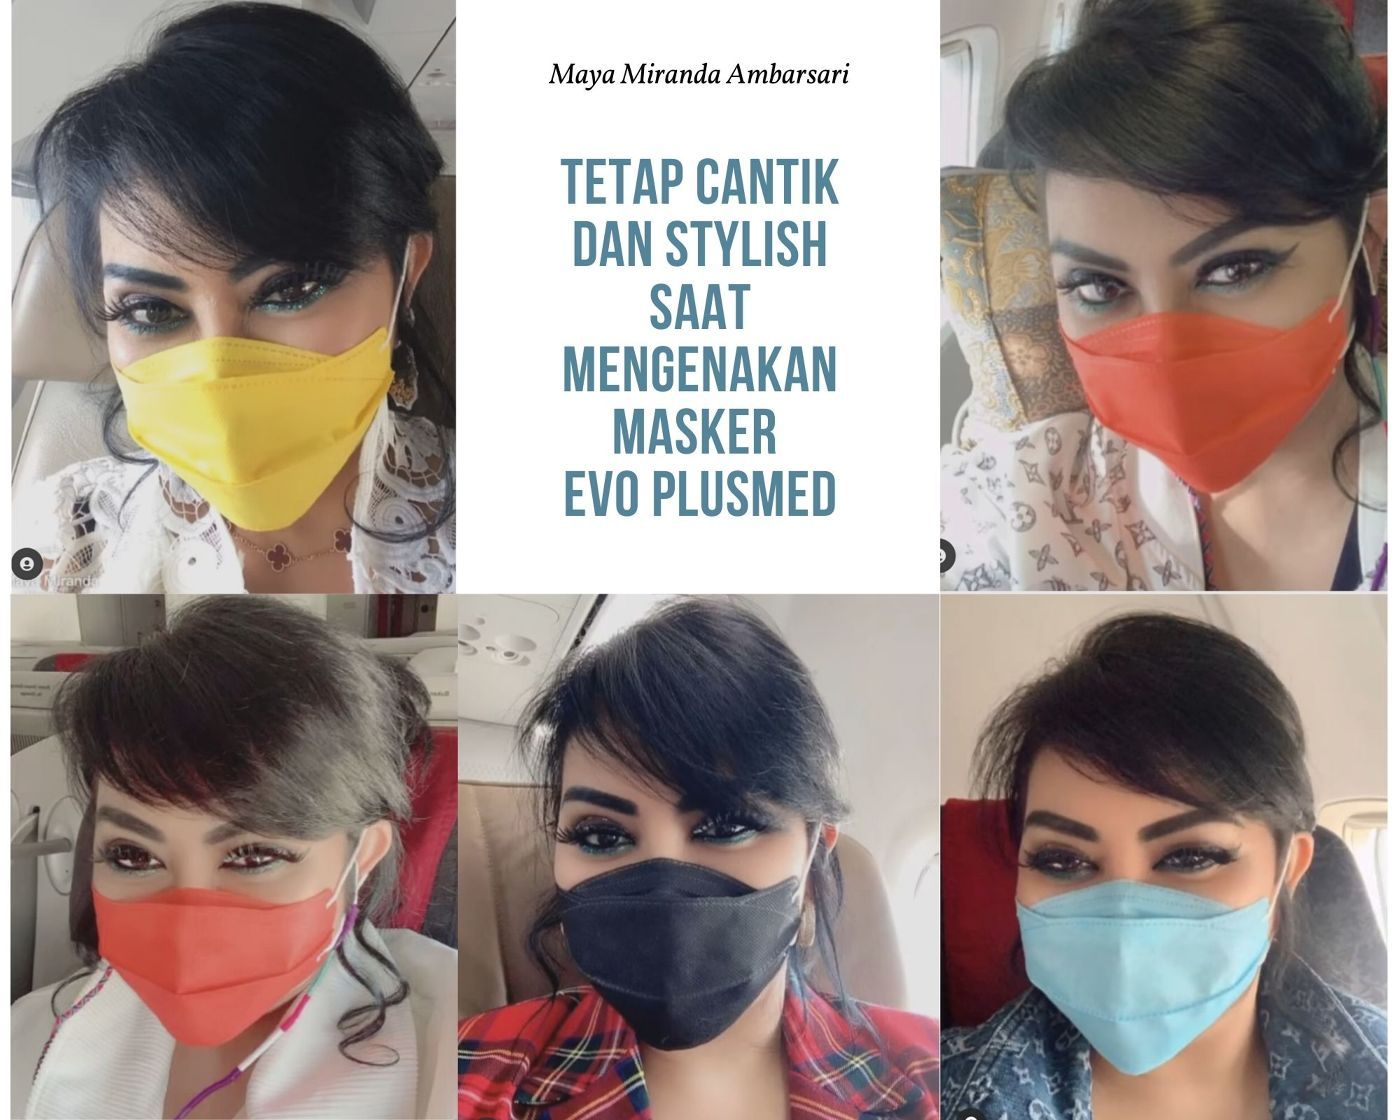 Evo Plusmed Jadi Masker Pilihan Maya Miranda Ambarsari di Masa Pandemi